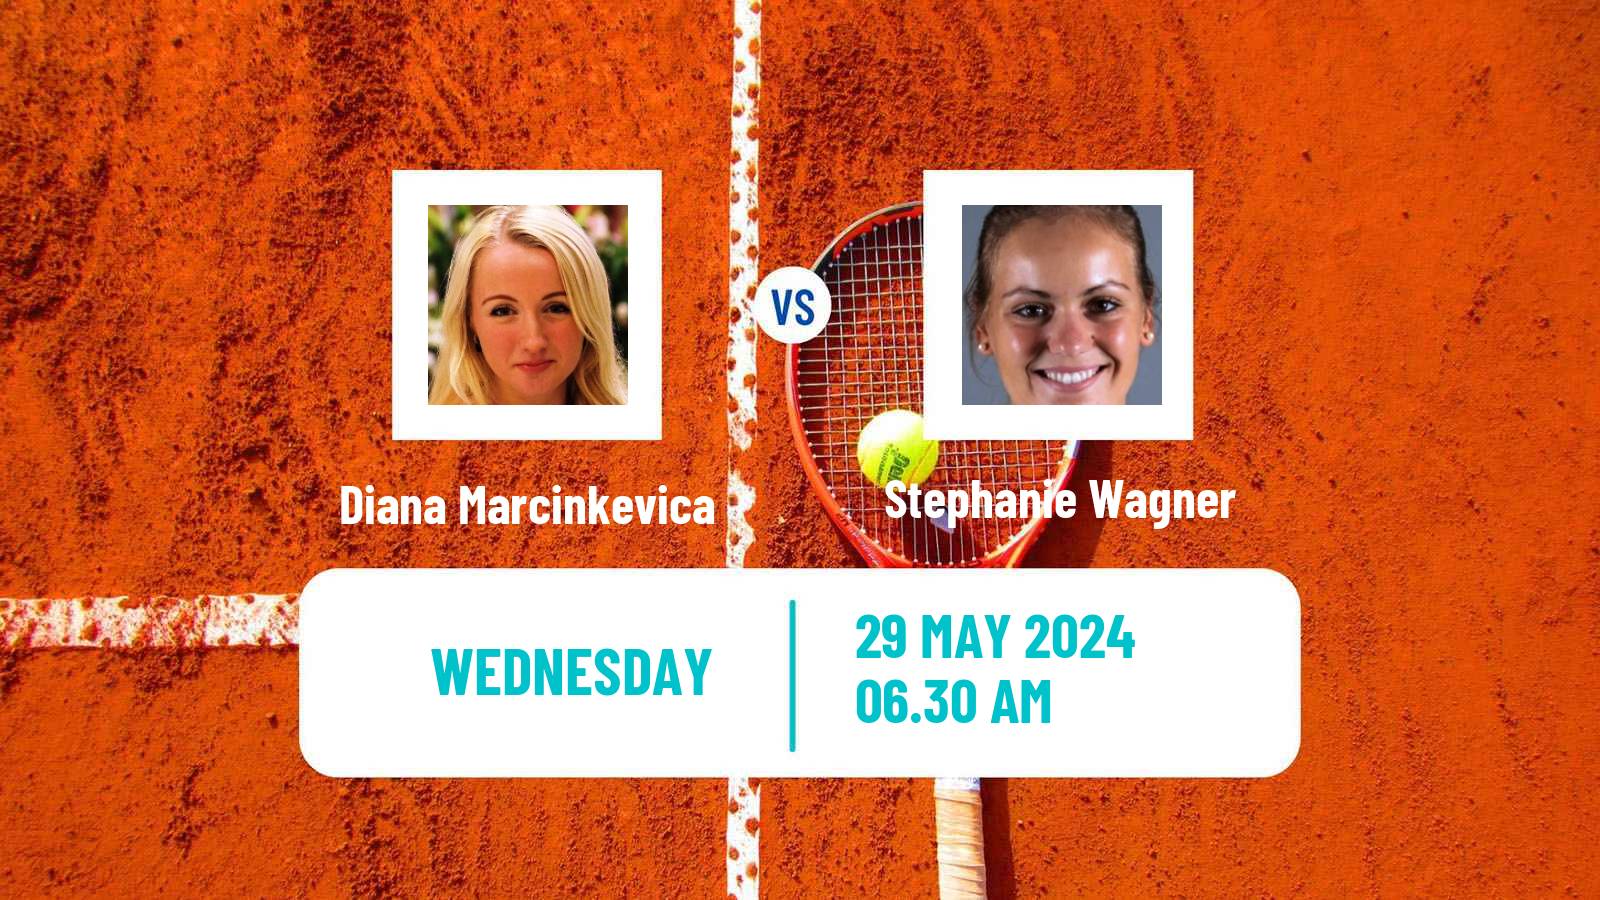 Tennis ITF W35 Klagenfurt Women Diana Marcinkevica - Stephanie Wagner